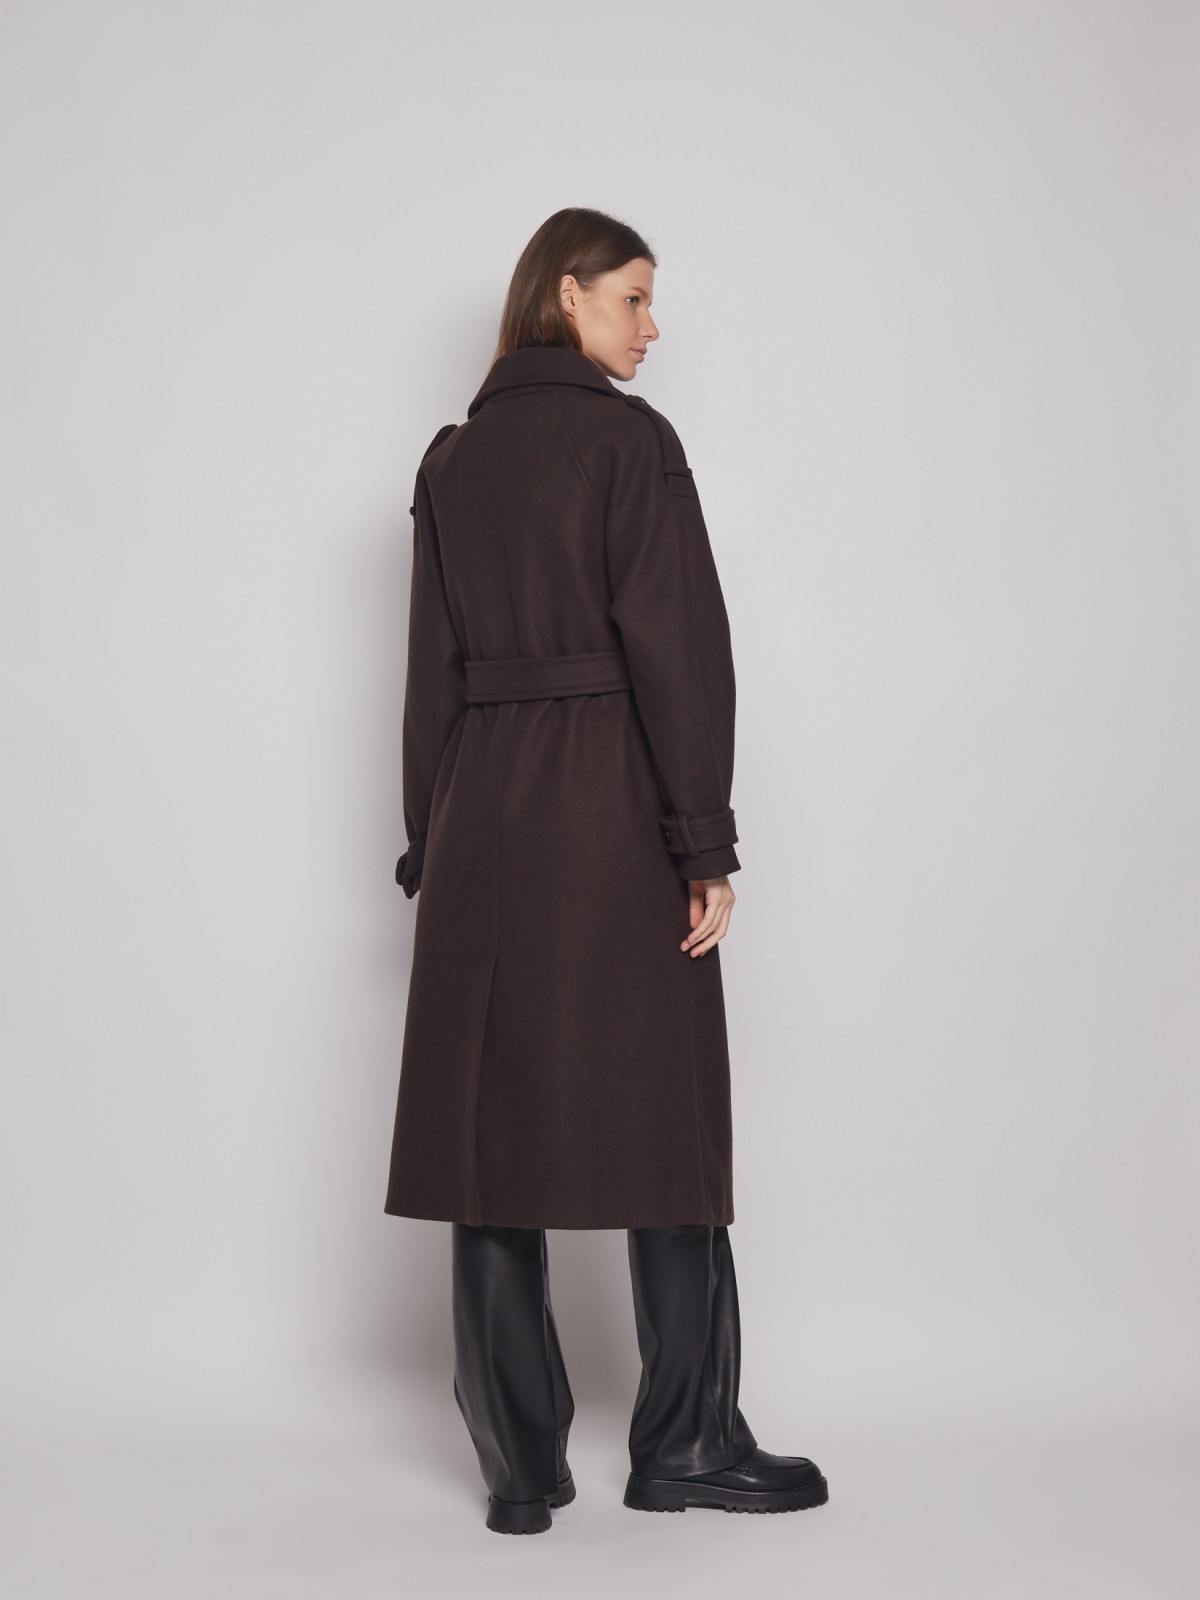 Двубортное пальто-тренч с поясом zolla 02312580Y044, цвет коричневый, размер XS - фото 5